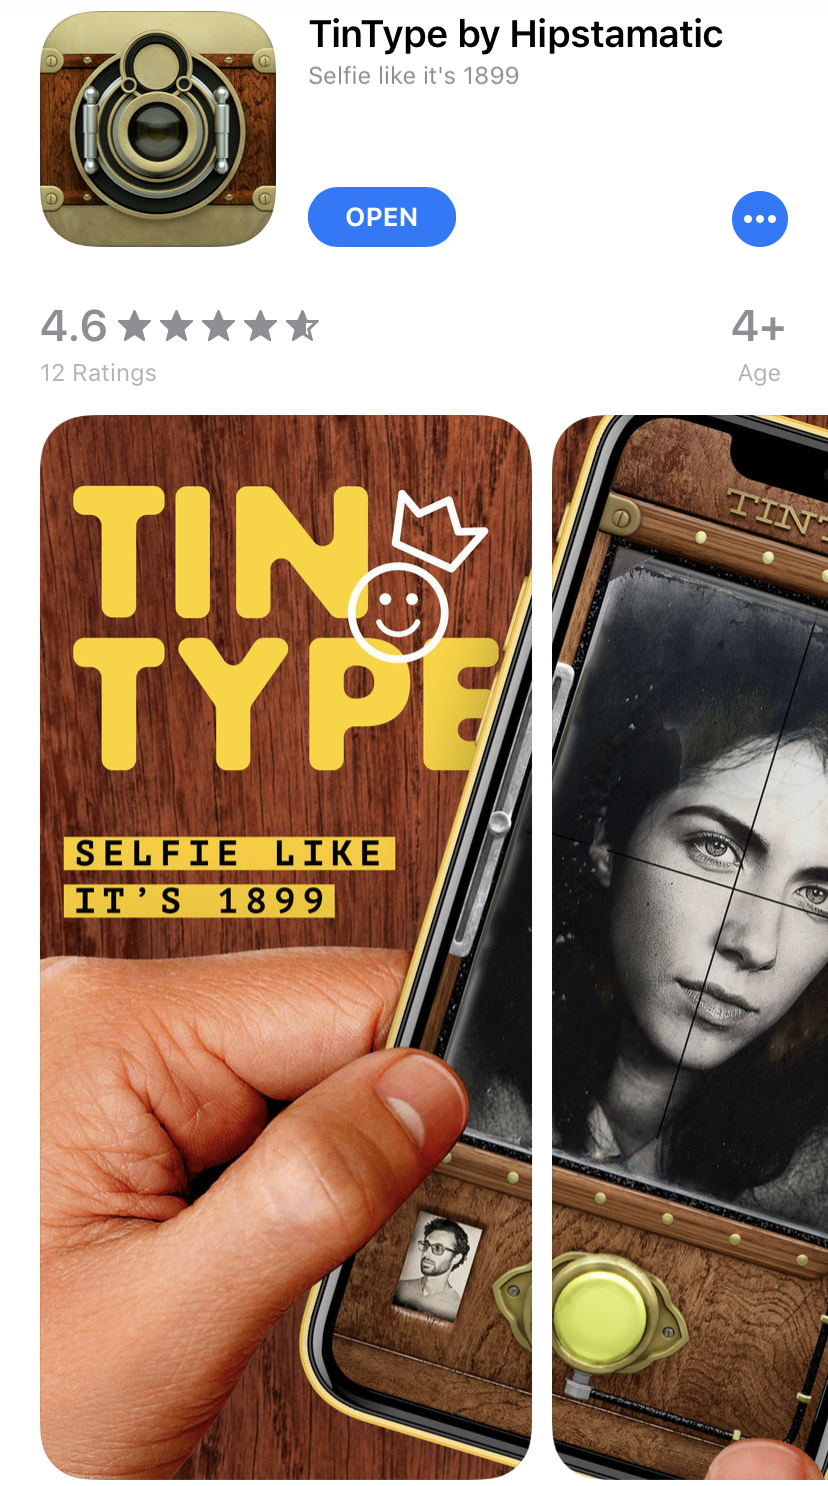 TinType